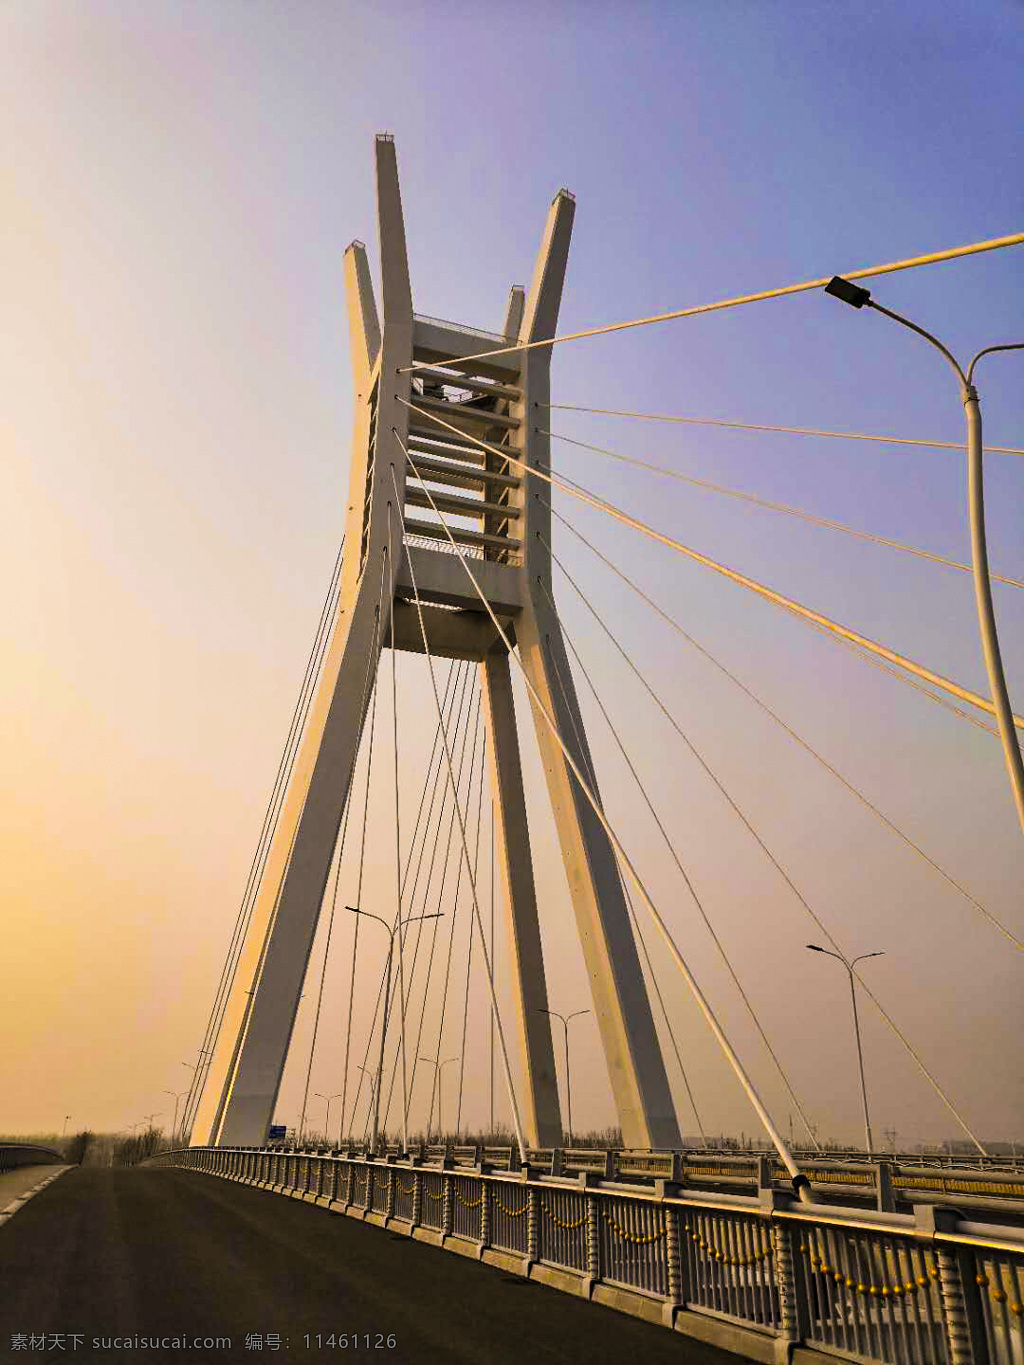 郑州 北龙湖 桥 雄伟大桥 图片照片背景